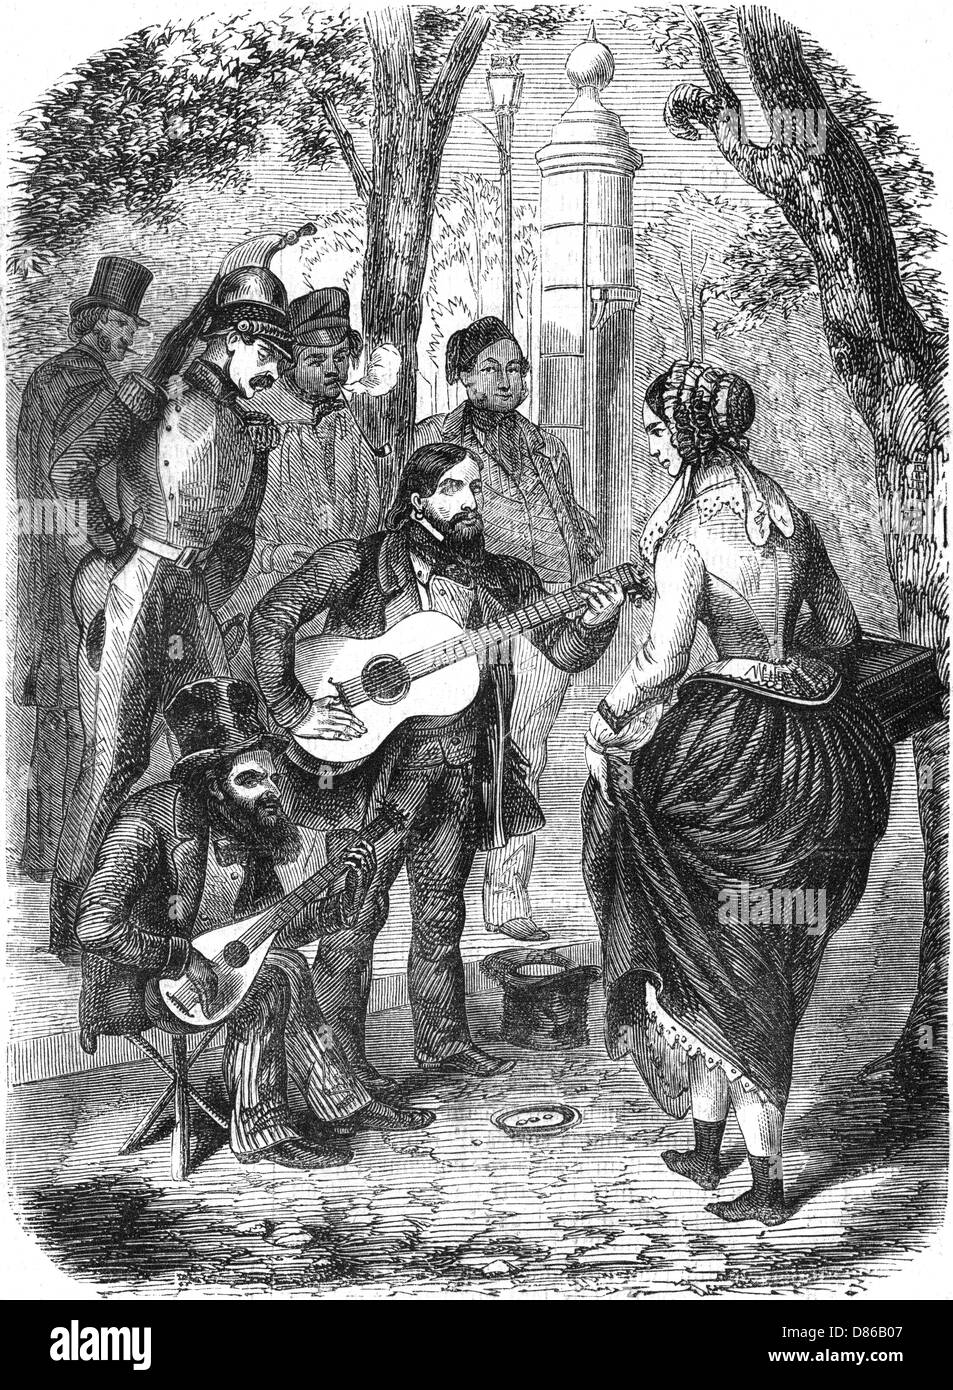 Musique de rue: Gitans jouant de la guitare, 1855 Banque D'Images